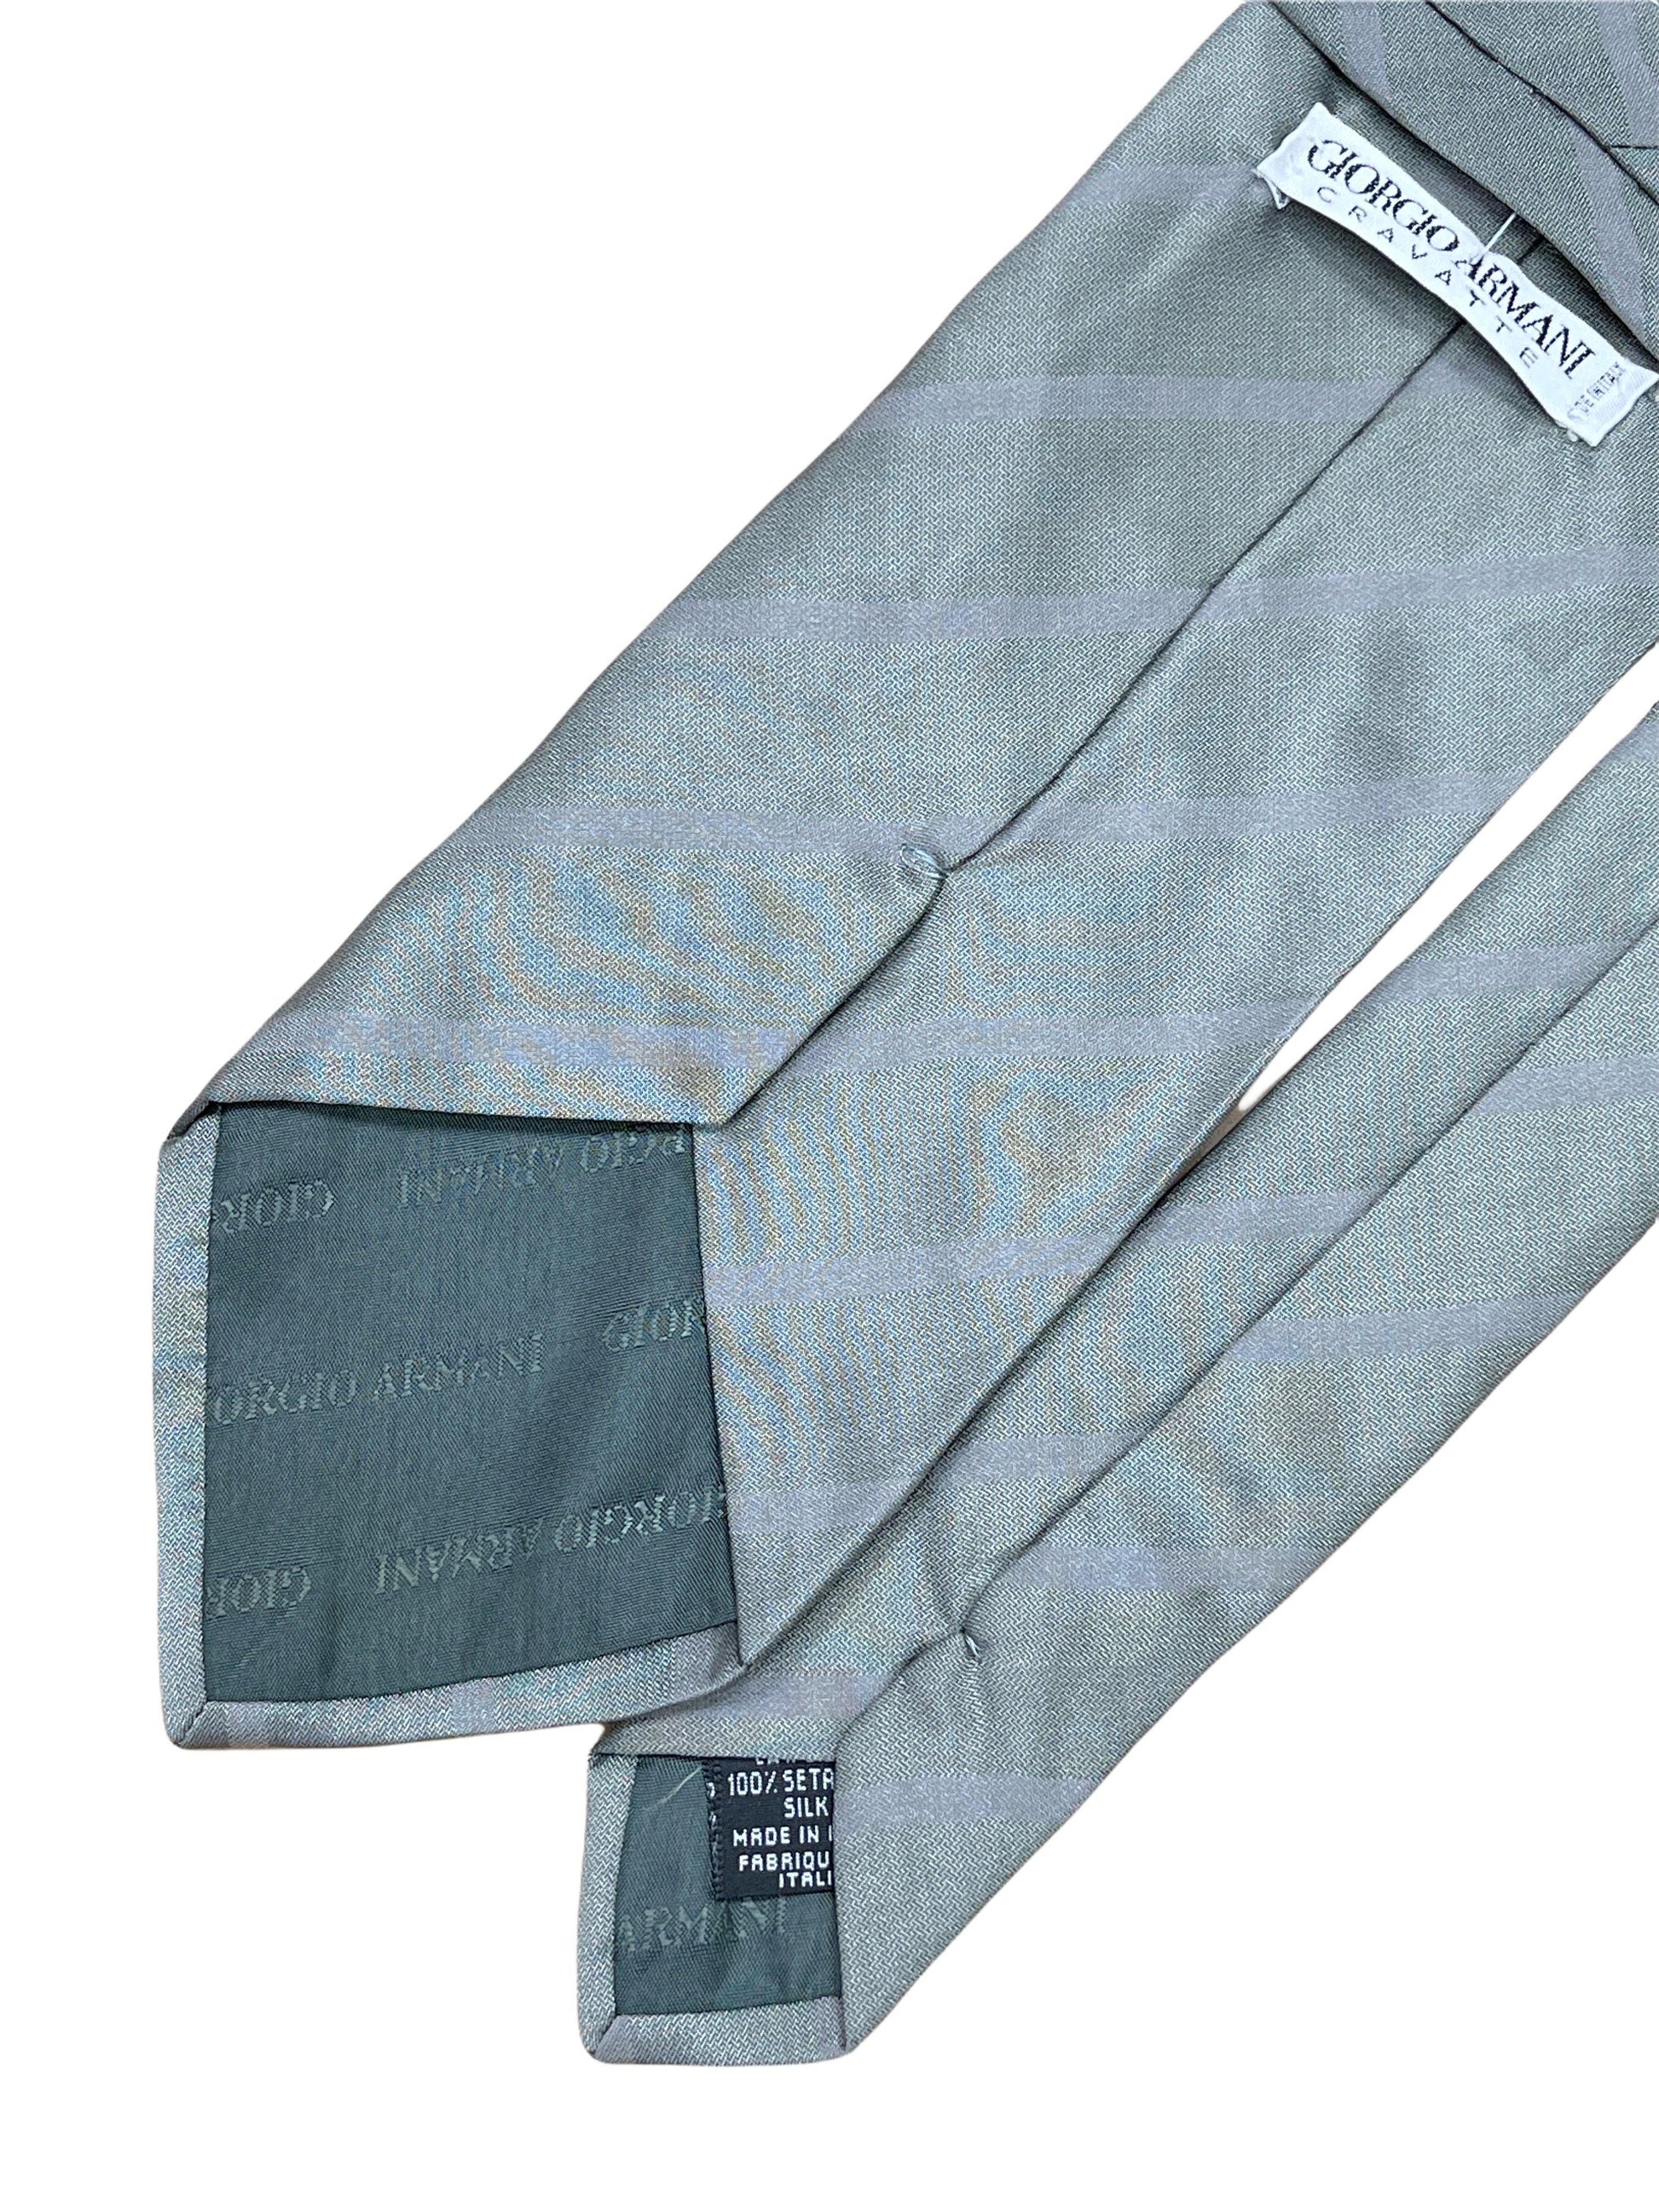 Giorgio Armani silver striped silk tie